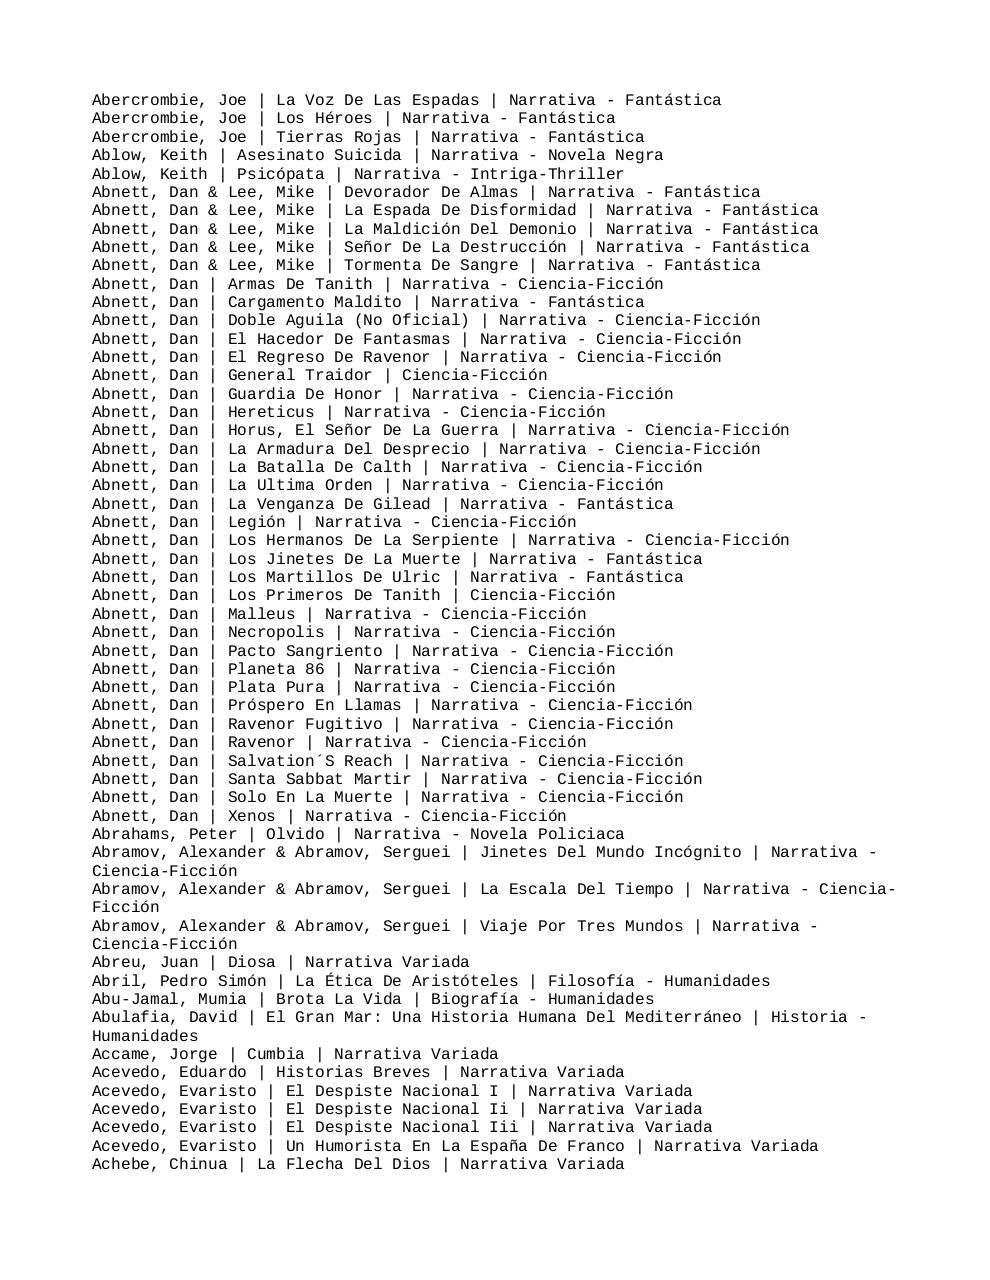 Listado de libros de papyrefb2 - 31-12-2014.pdf - page 2/482